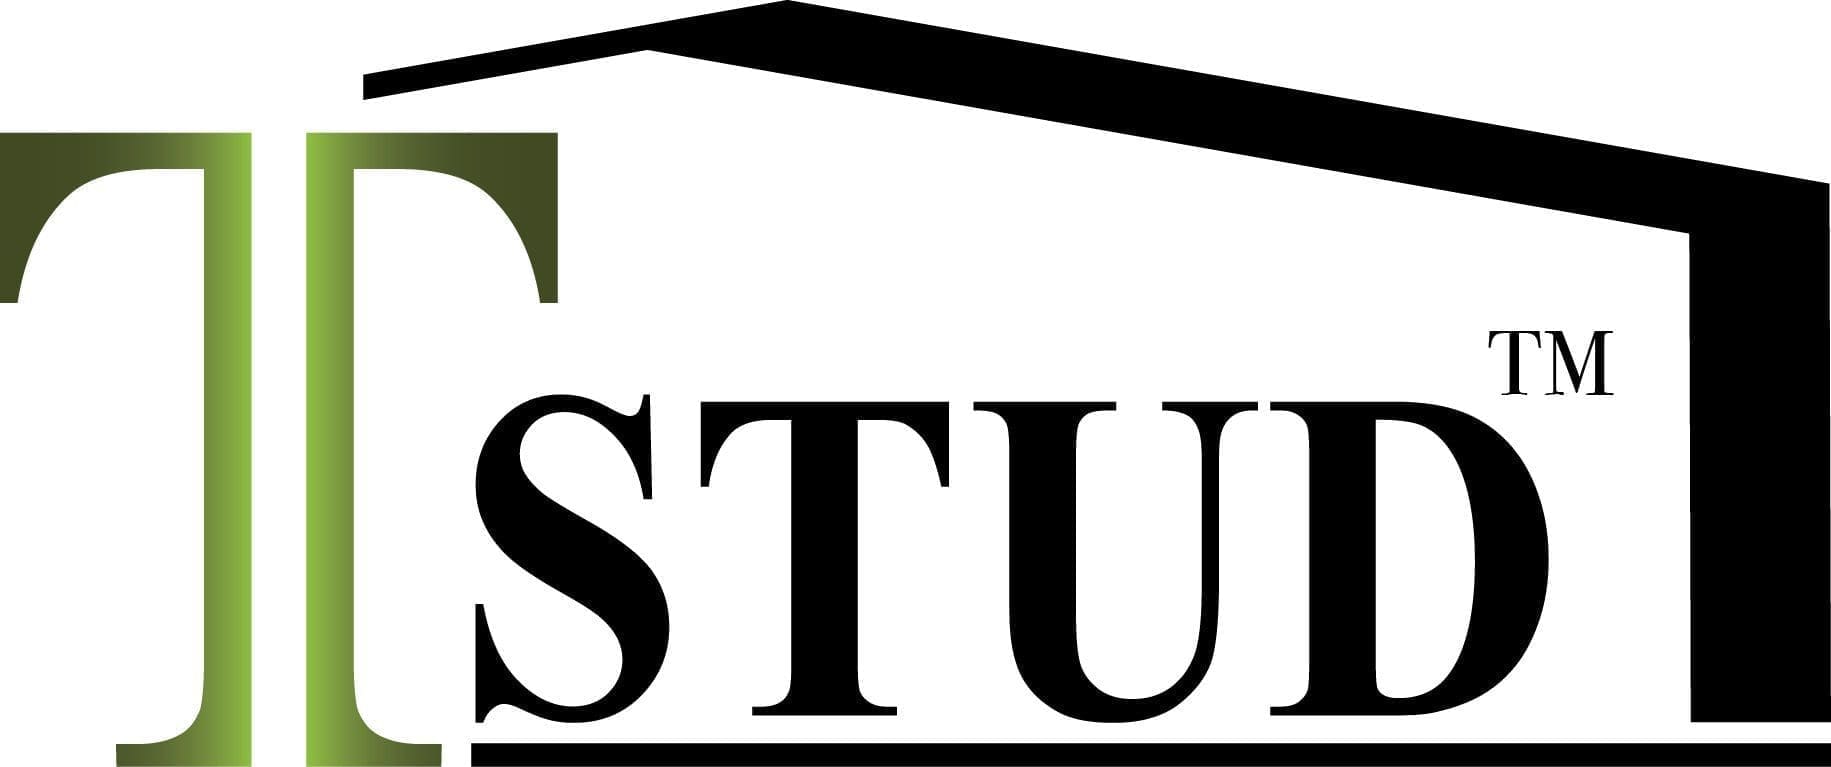 tstud logo